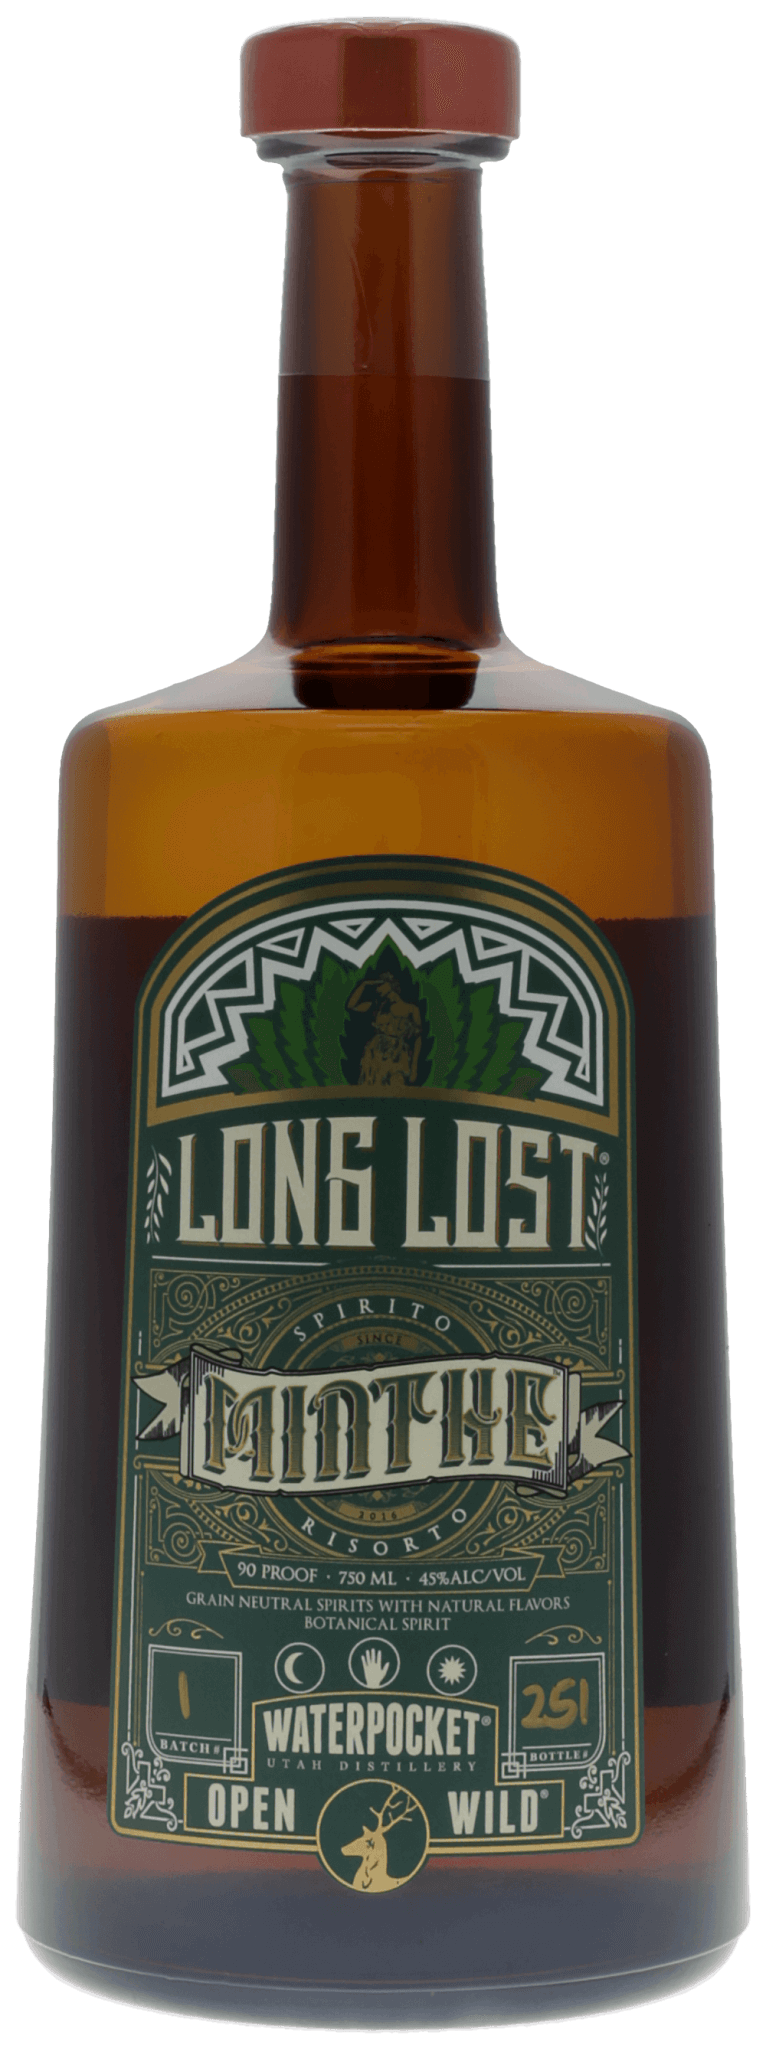 Long Lost Minthe Liqueur